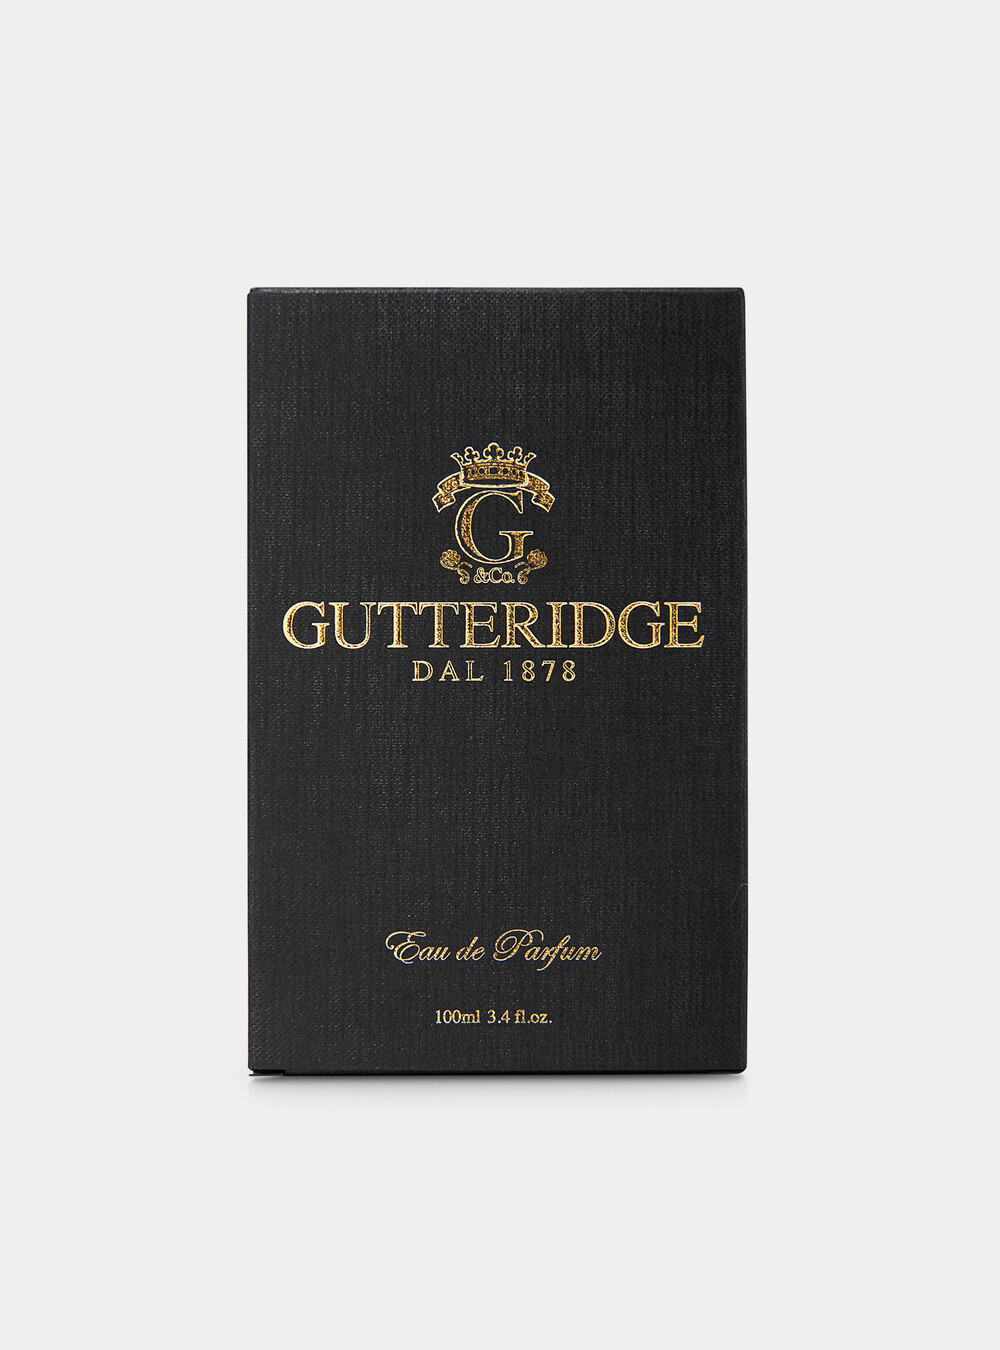 Profumo Gutteridge 100 ml